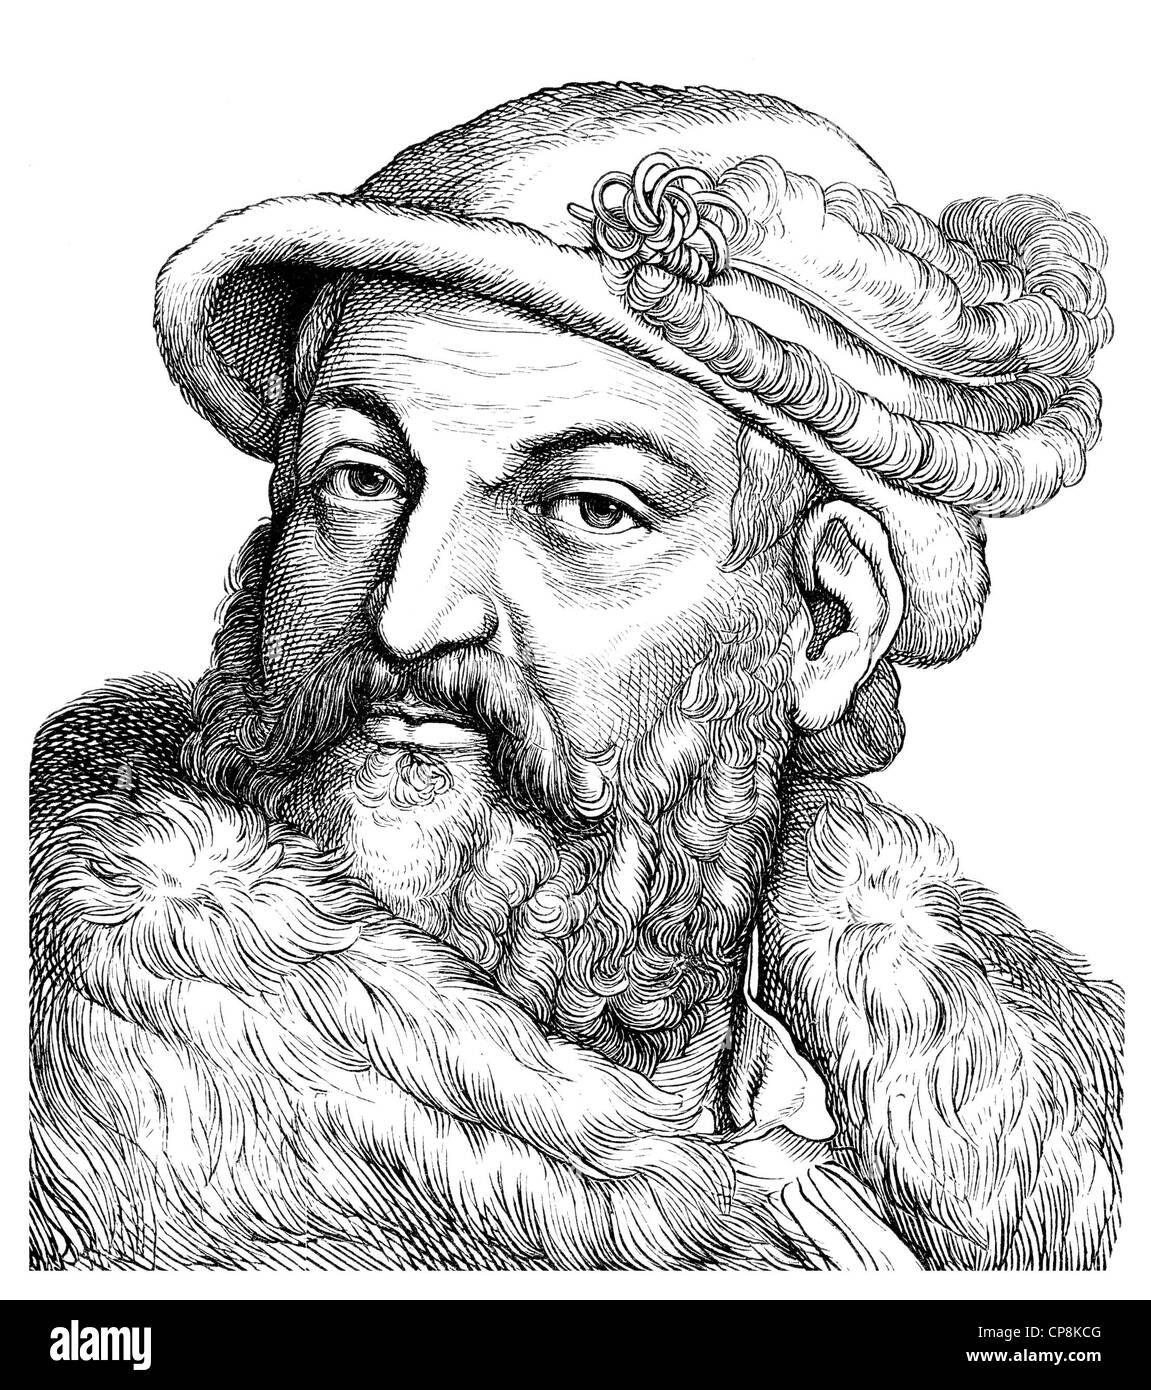 Joachim II Hector, 1505 - 1571, Elector of Brandenburg, Historische Zeichnung aus dem 19. Jahrhundert, Portrait von Joachim II. Stock Photo